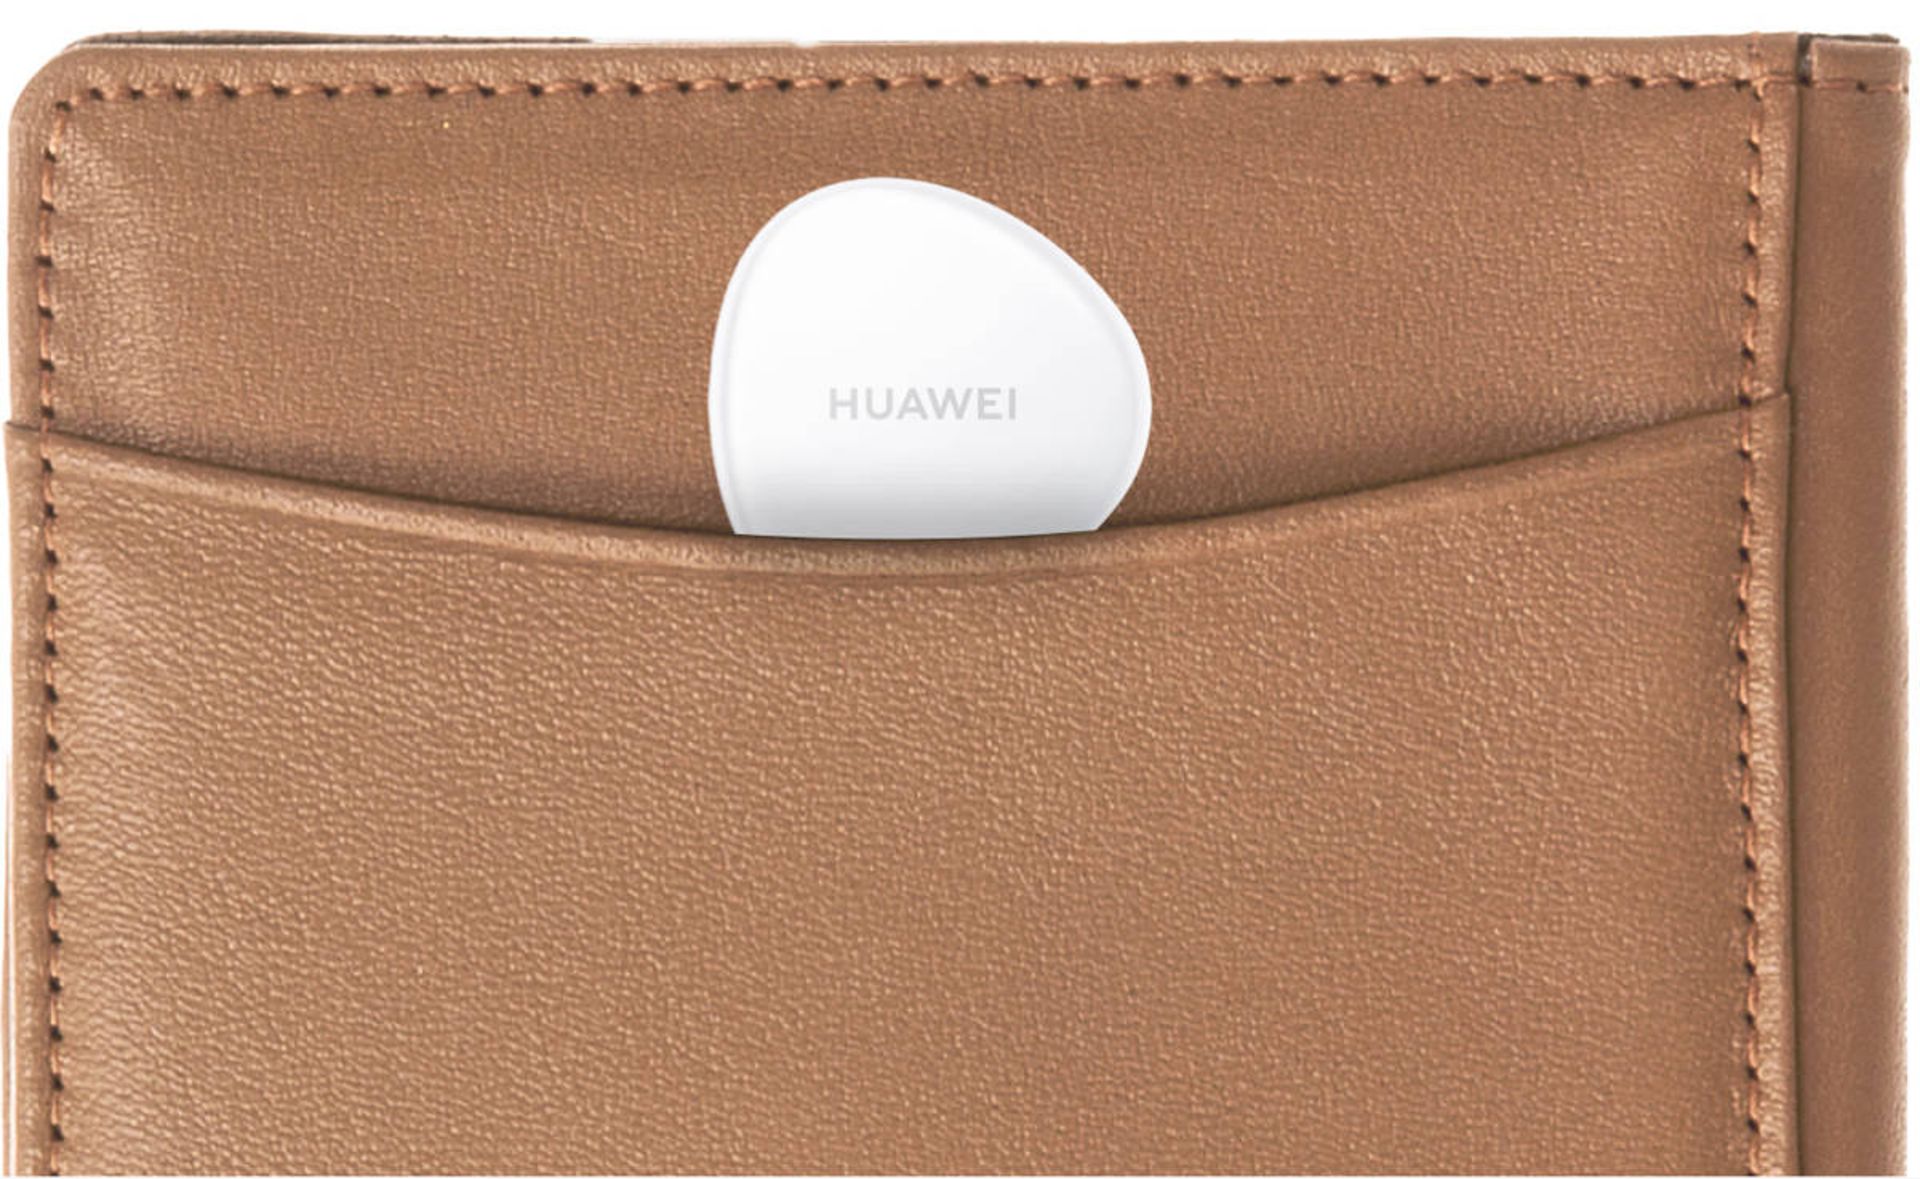 ردیاب هوشمند هواوی تگ / Huawei Tag در داخل کیف